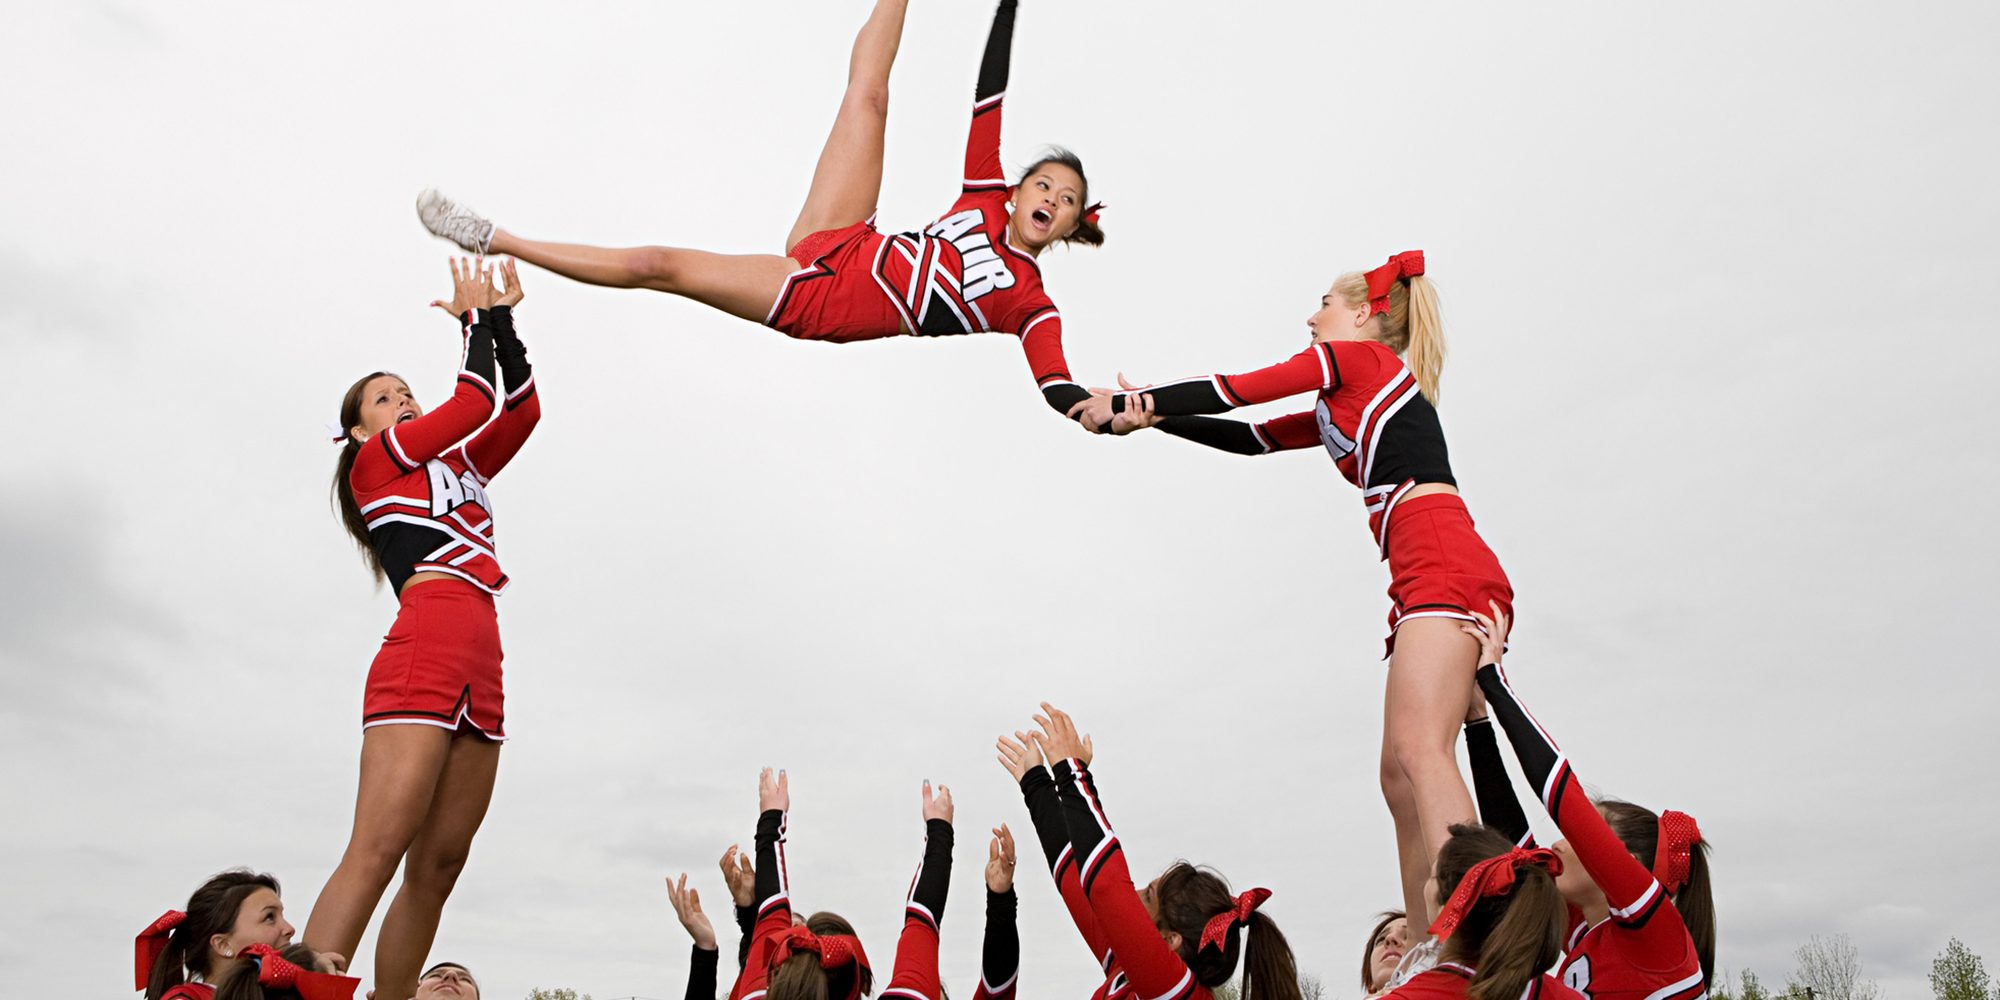 Cheerleaders performing routine